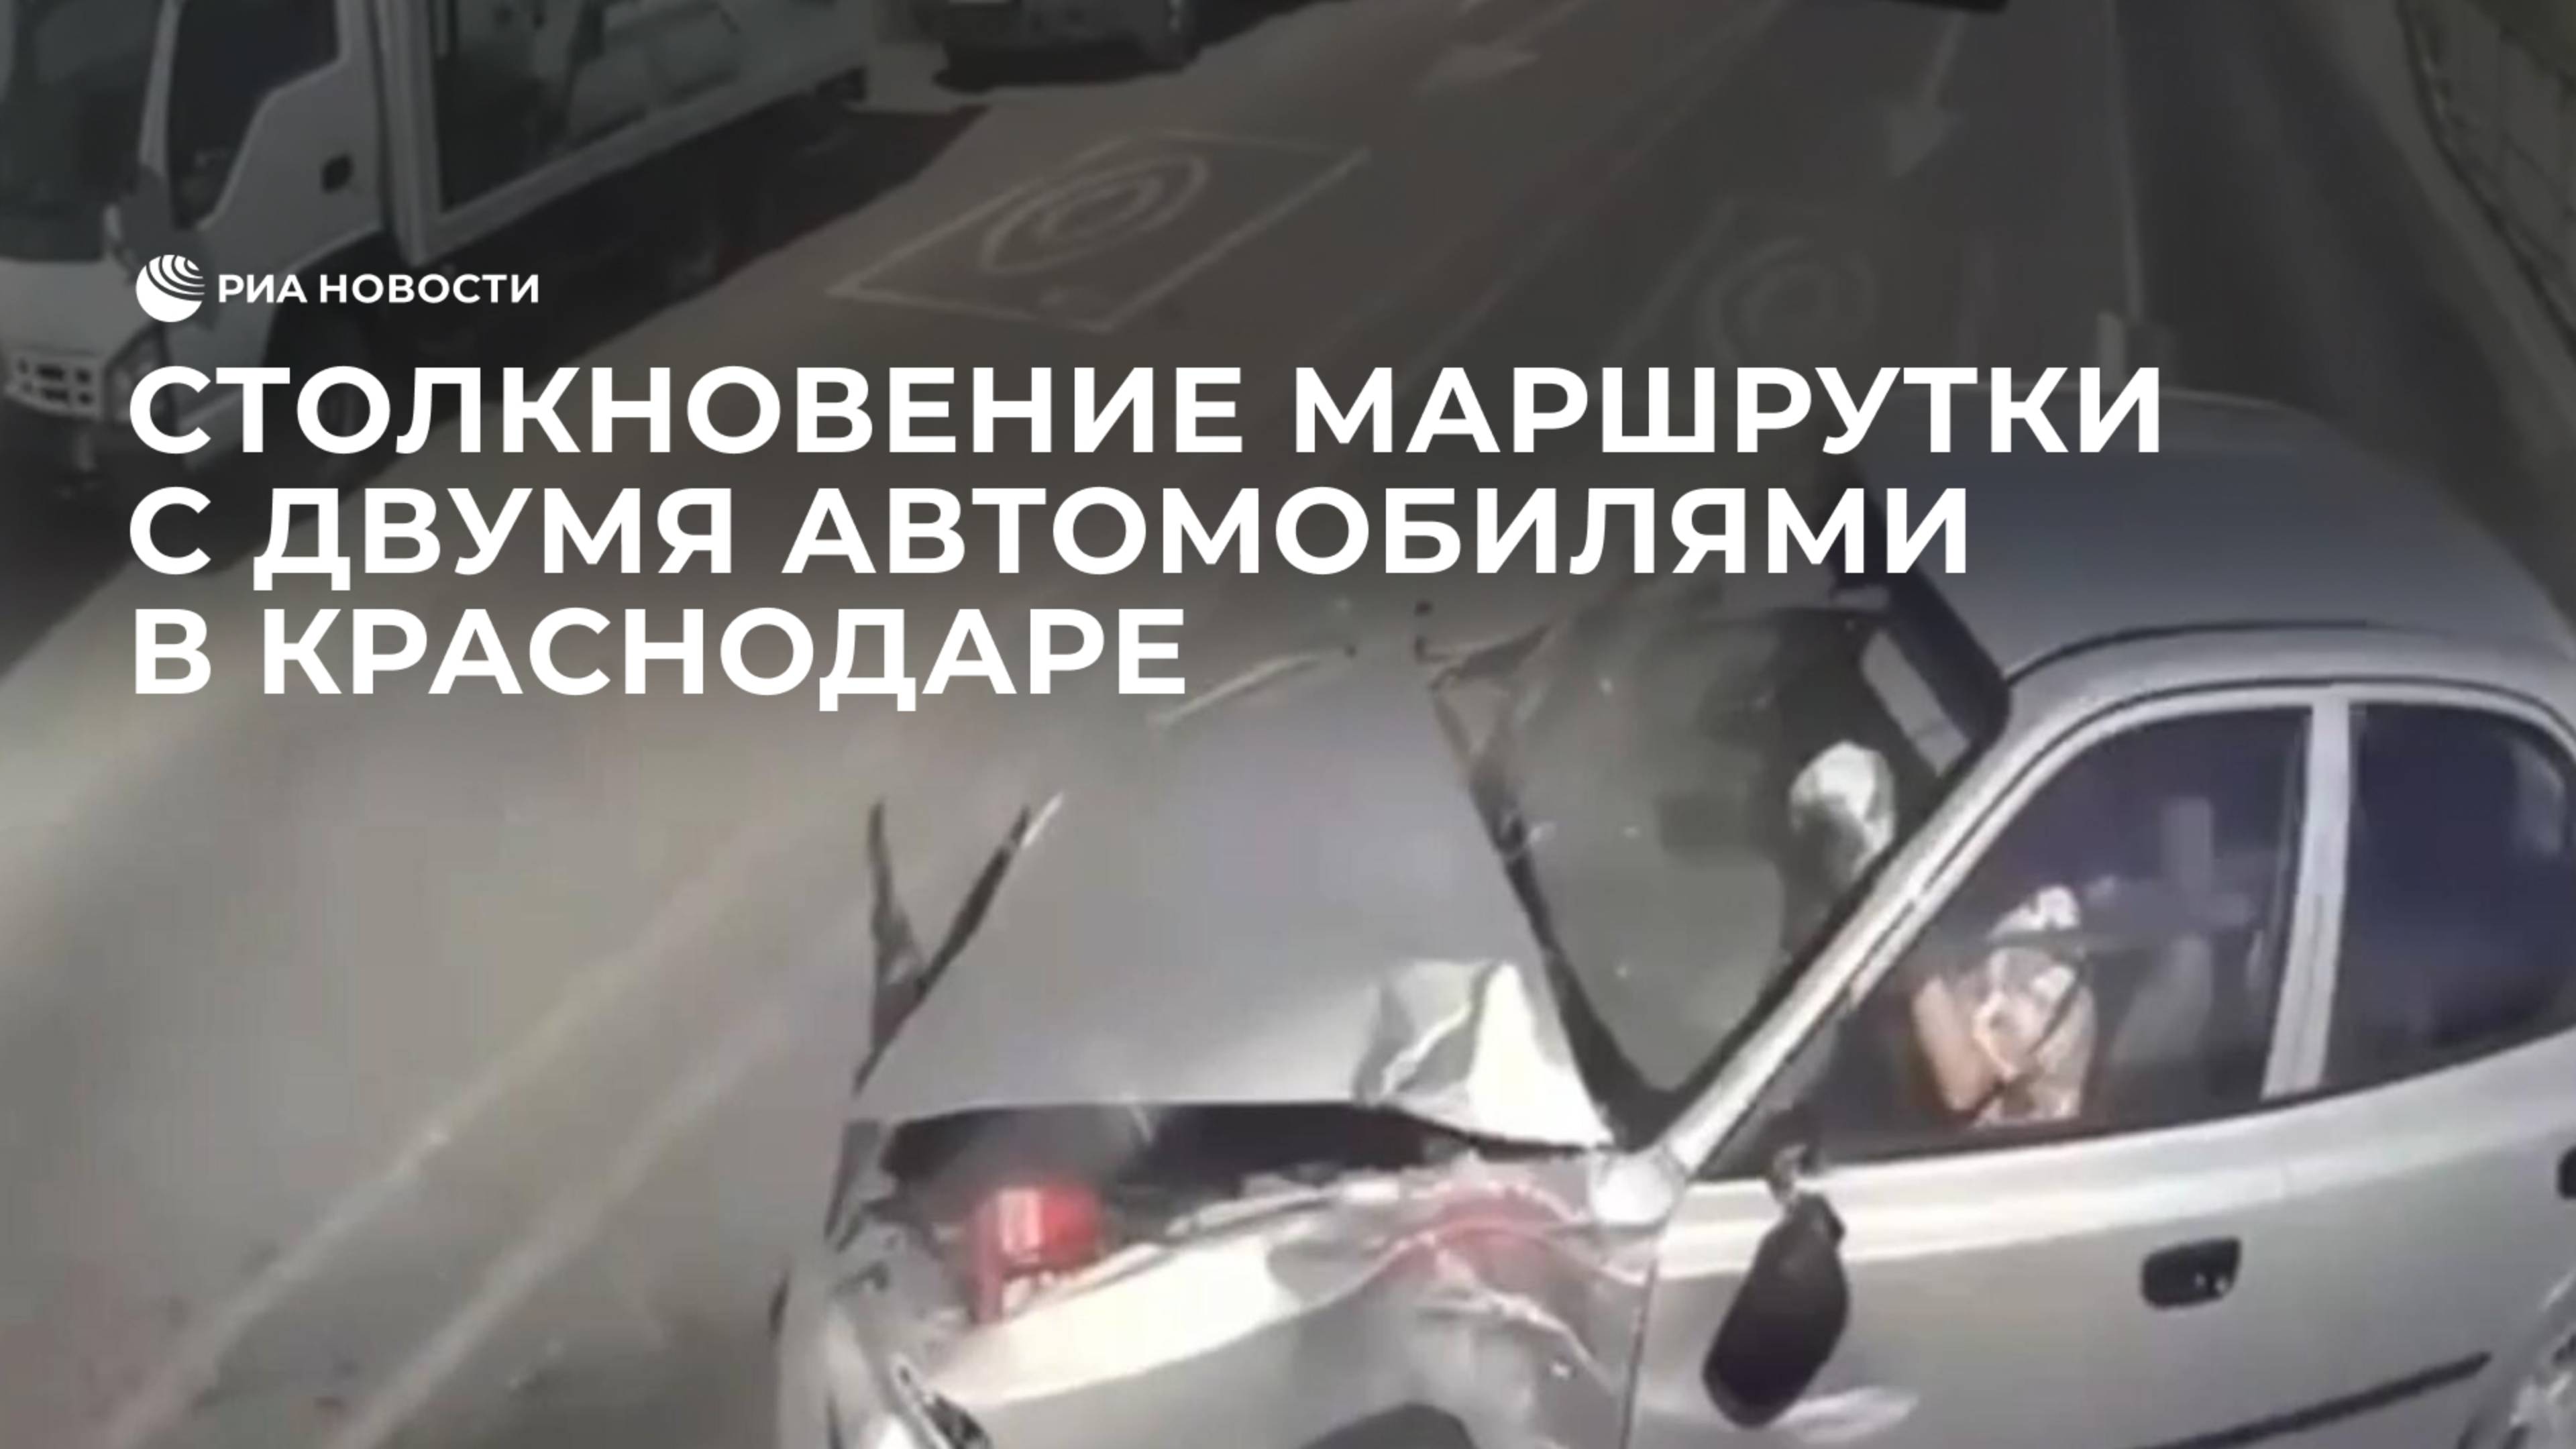 Столкновение маршрутки с двумя автомобилями в Краснодаре